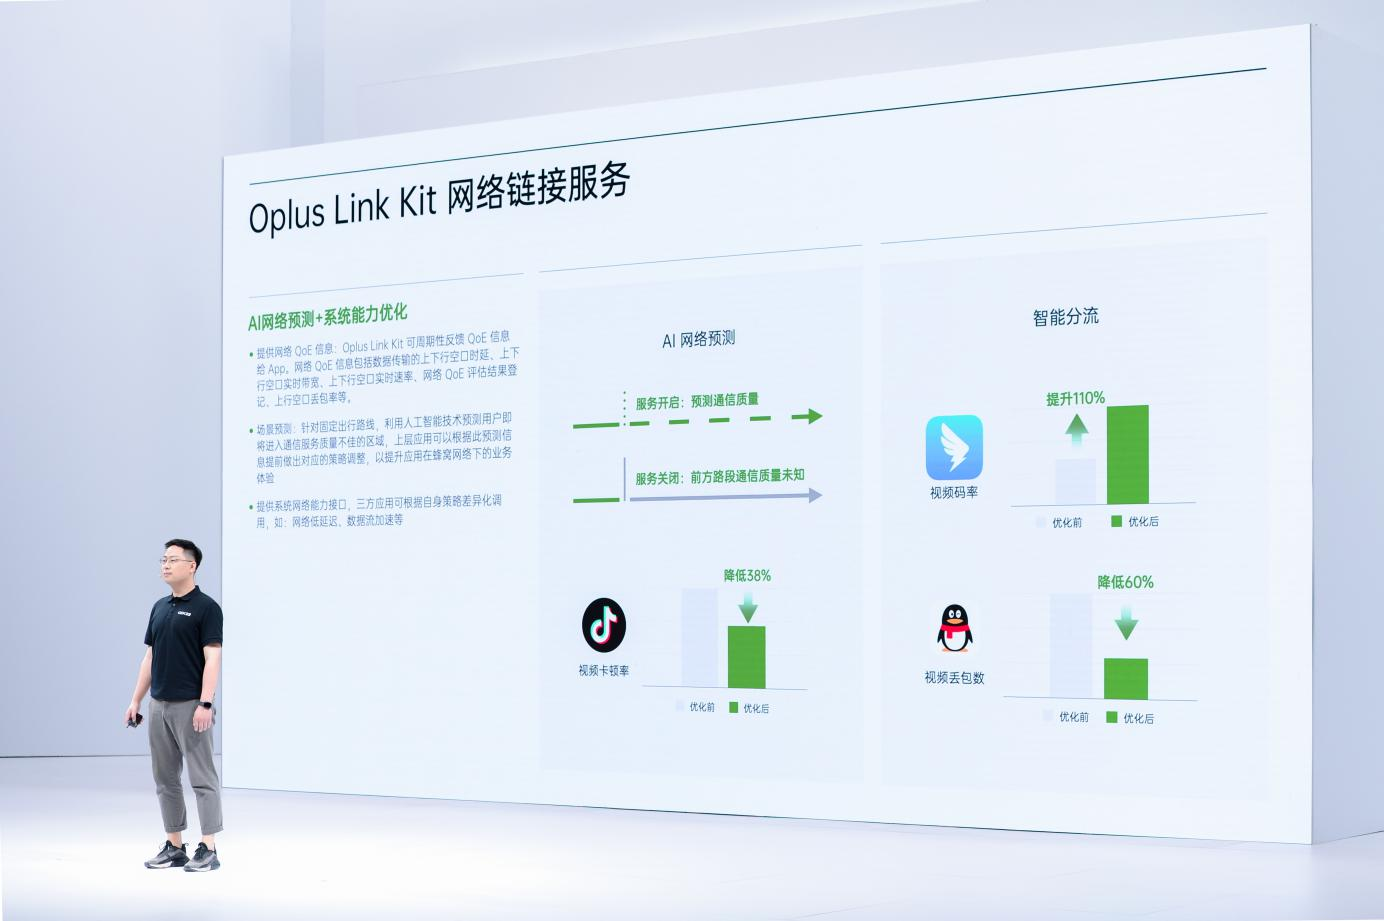 ODC22 ColorOS技术能力分论坛｜持续推动技术创新，携手开发者共建OPPO 开放生态